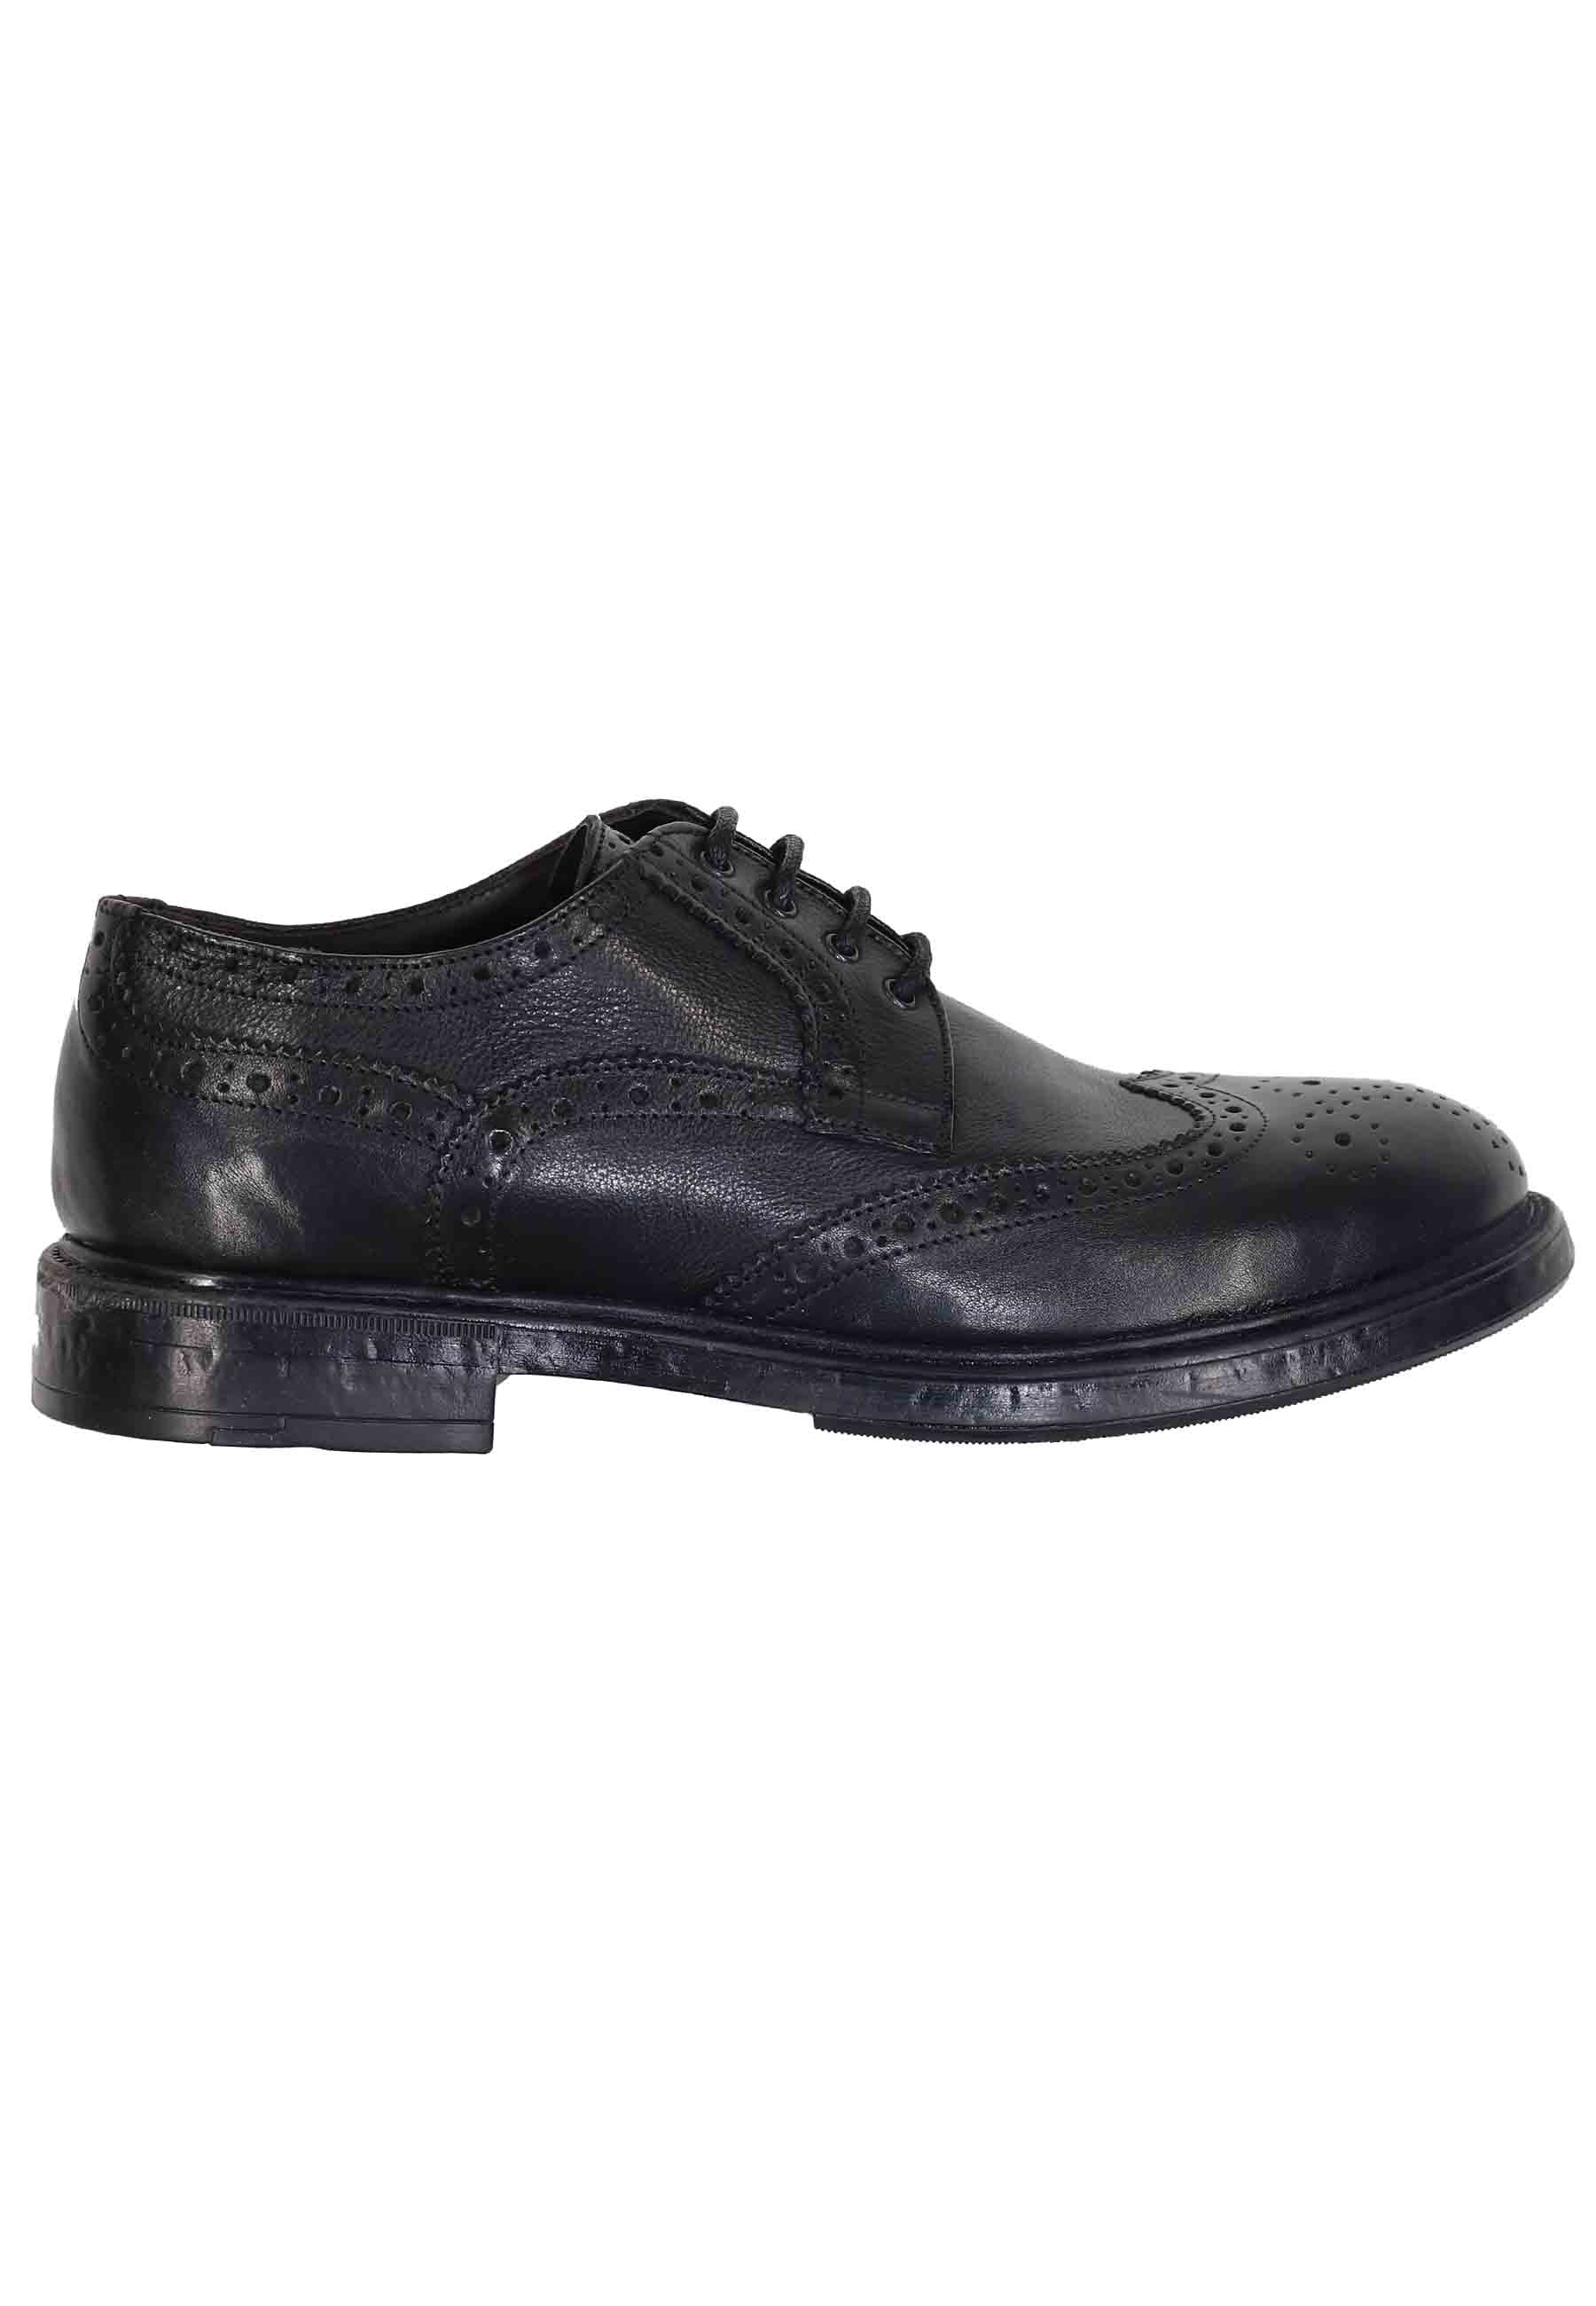 Chaussures à lacets pour hommes en cuir noir avec coutures anglaises et semelle en caoutchouc